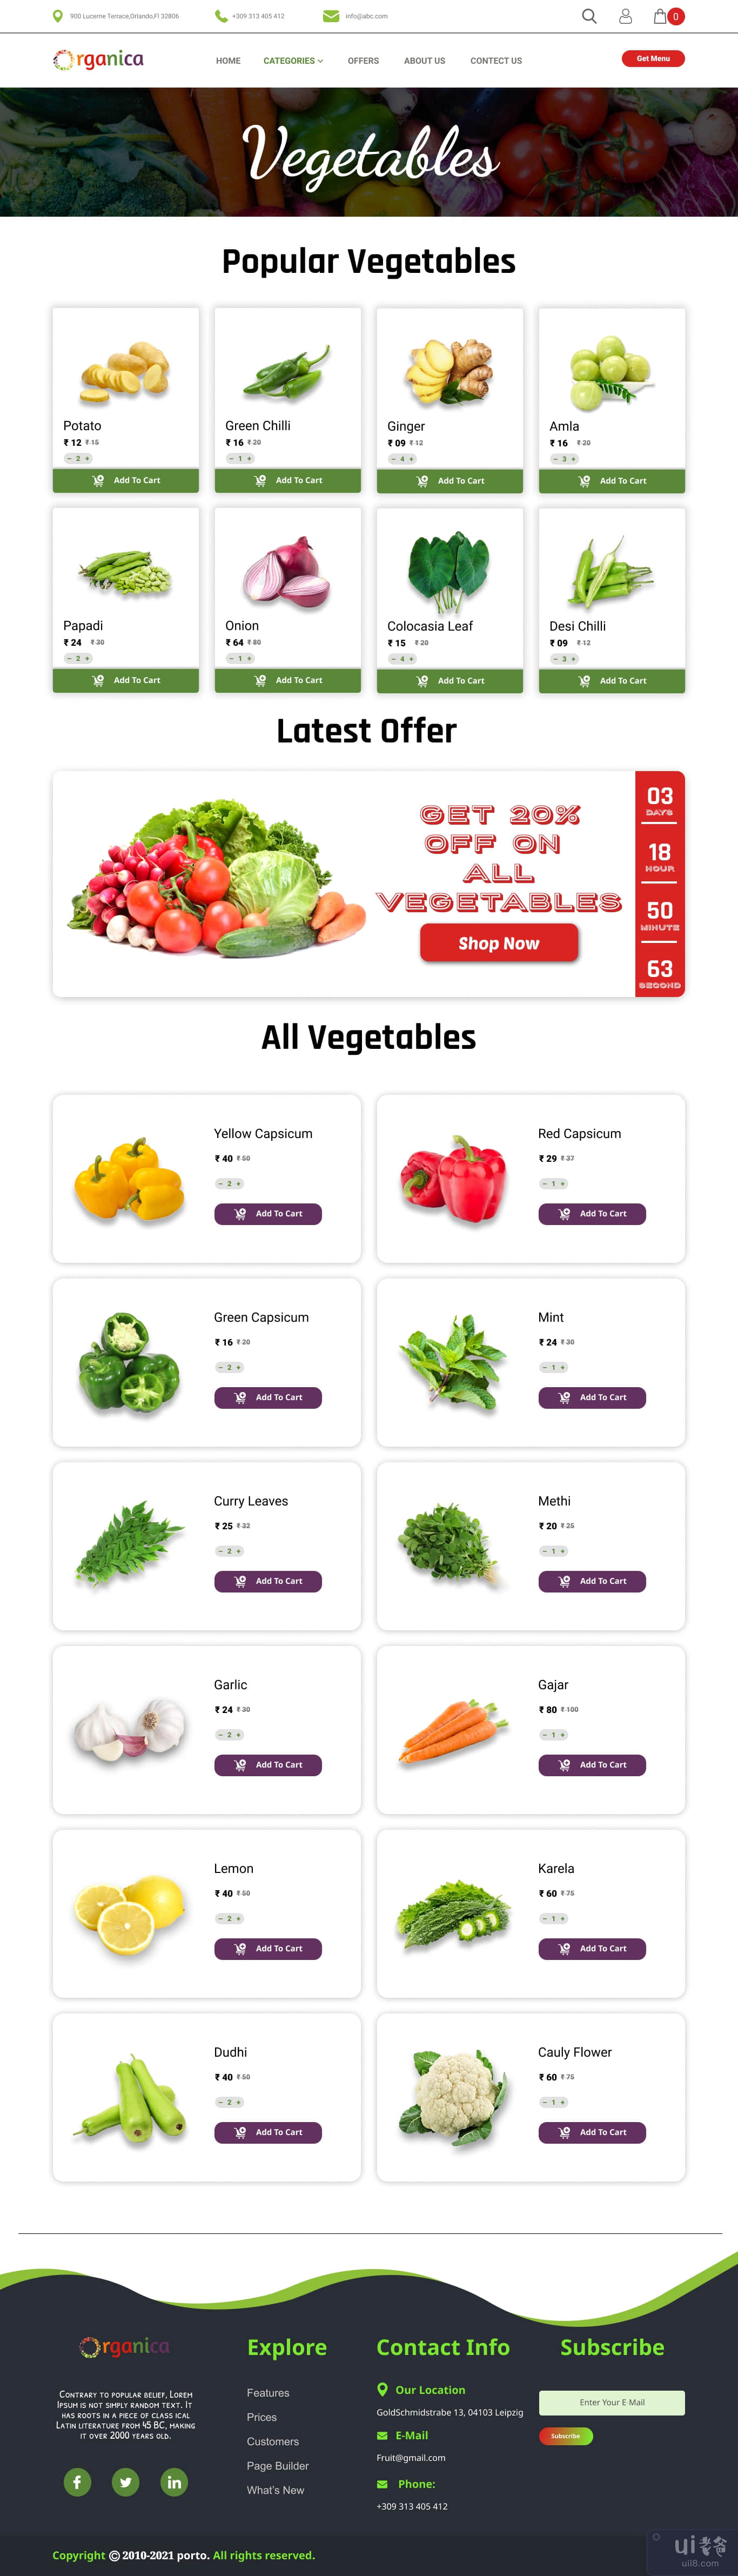 在线水果和蔬菜销售。(Online Fruits & Vegetables Selling.)插图4